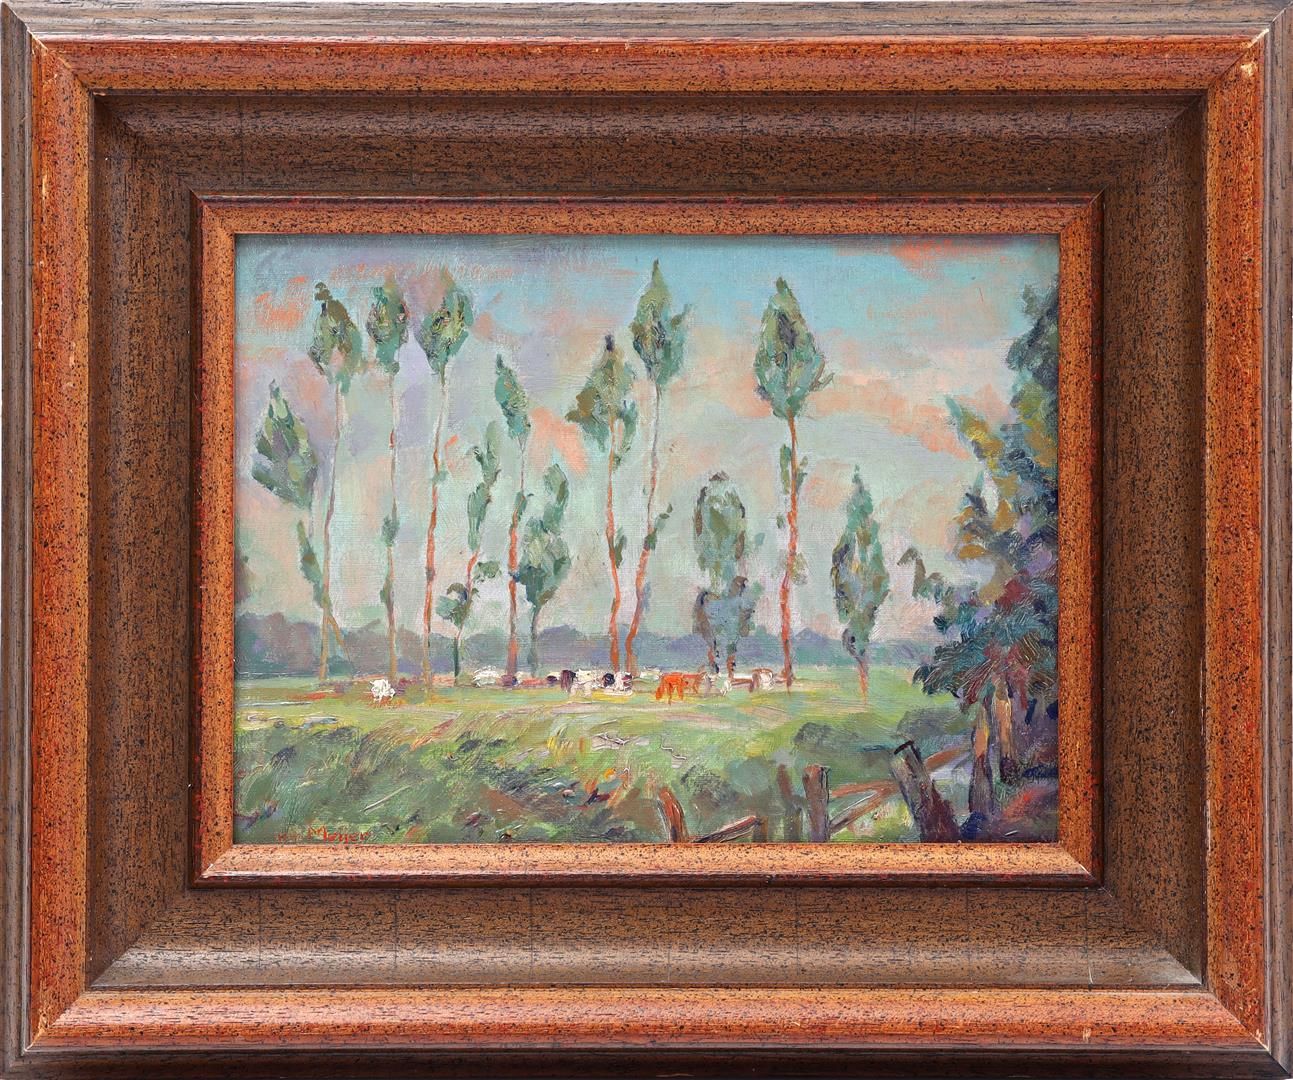 Johan Meijer Johan Meijer (1885-1970)

Landscape with cows under trees, canvas 2&hellip;